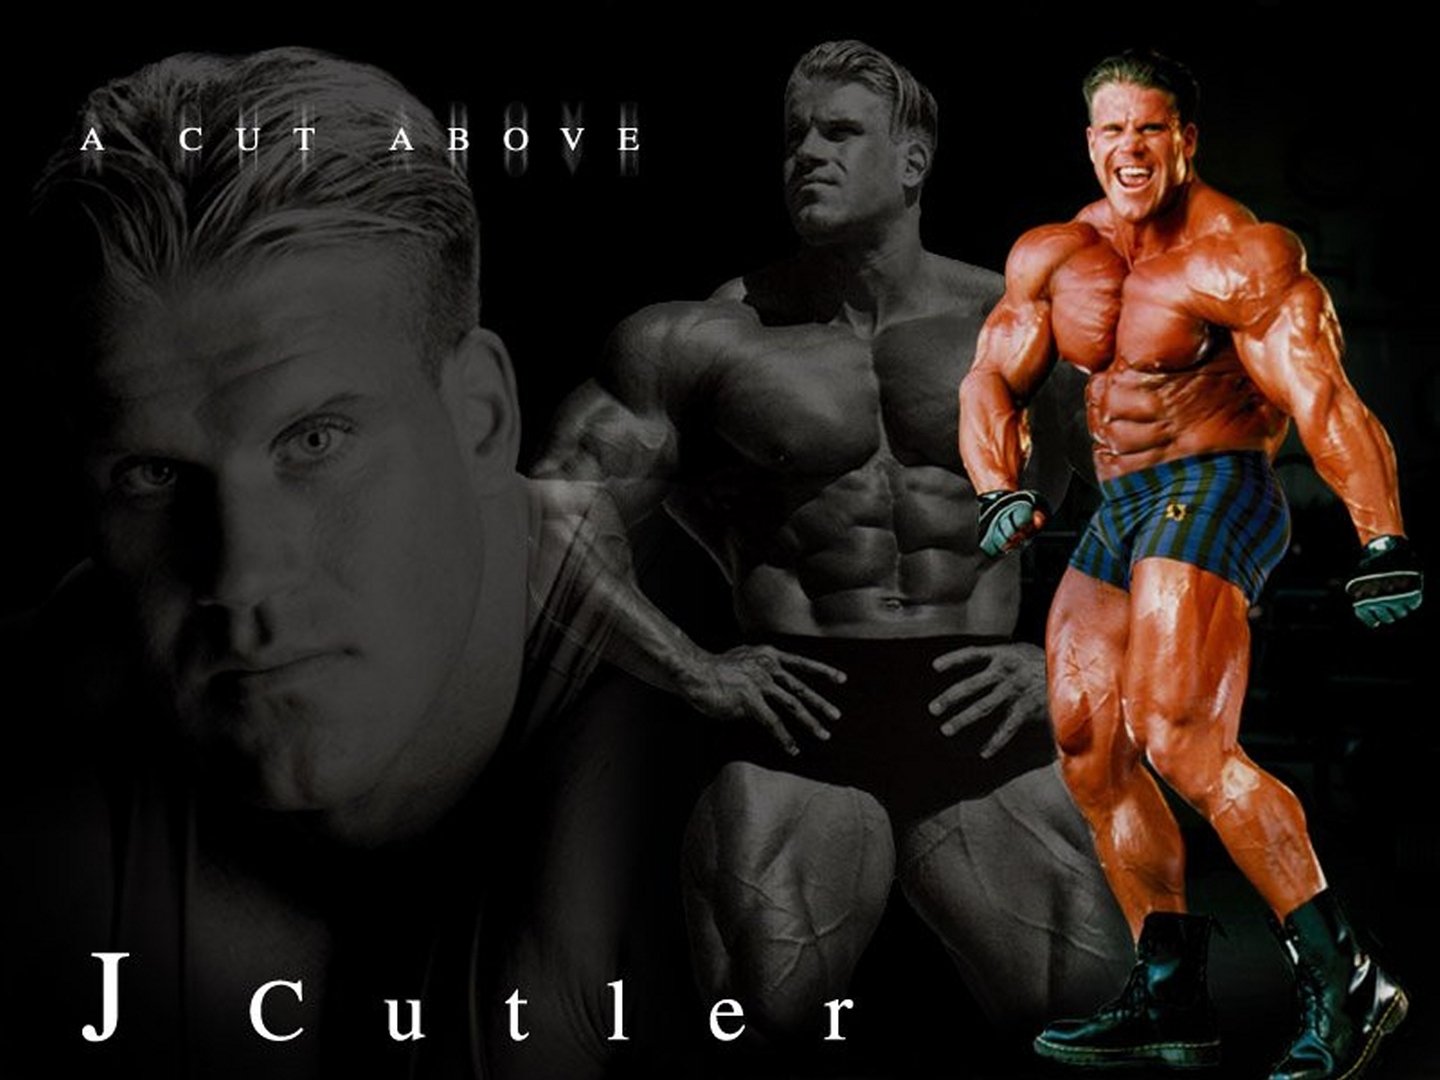 jay cutler hd wallpaper,bodybuilding,bodybuilder,idoneità fisica,professionista del fitness,barechested